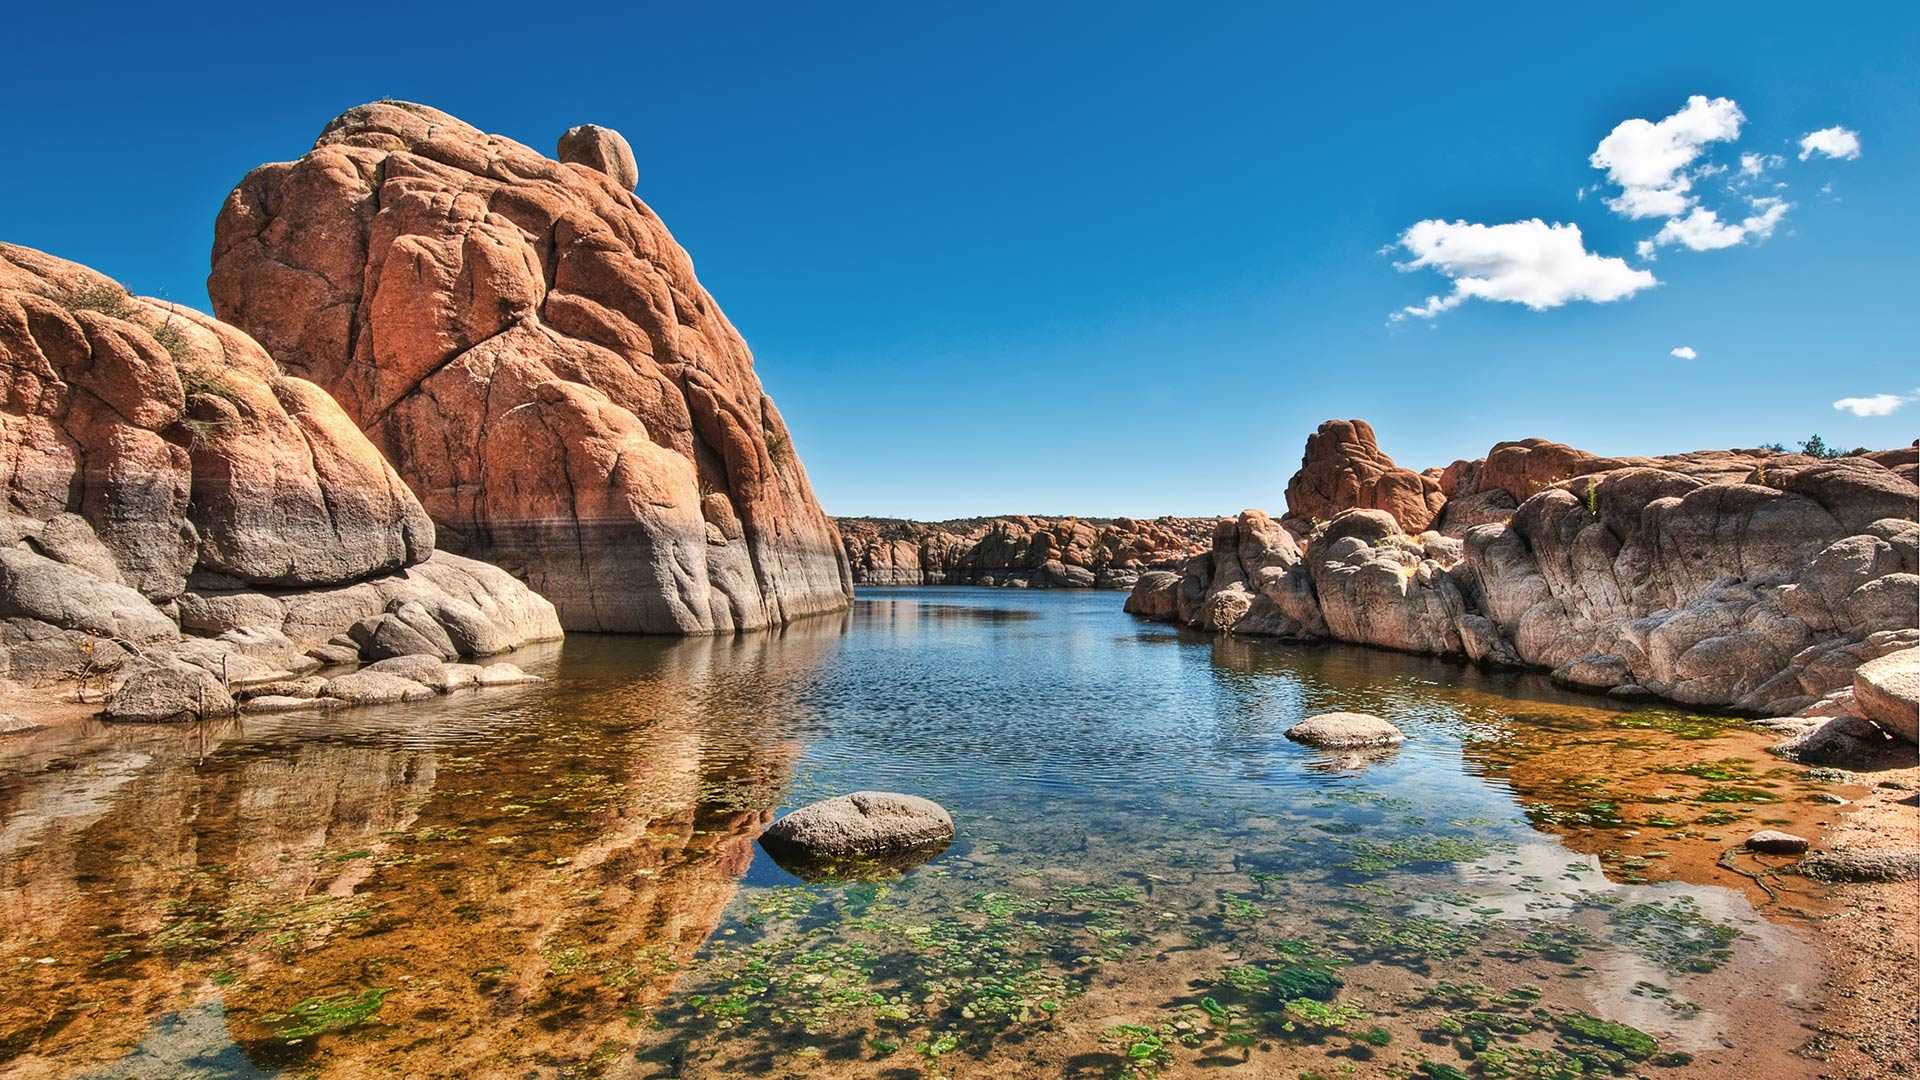 Đặt vé du lịch Mỹ, bạn có thể lựa chọn thành phố xinh đẹp Prescott - Arizona là điểm dừng chân